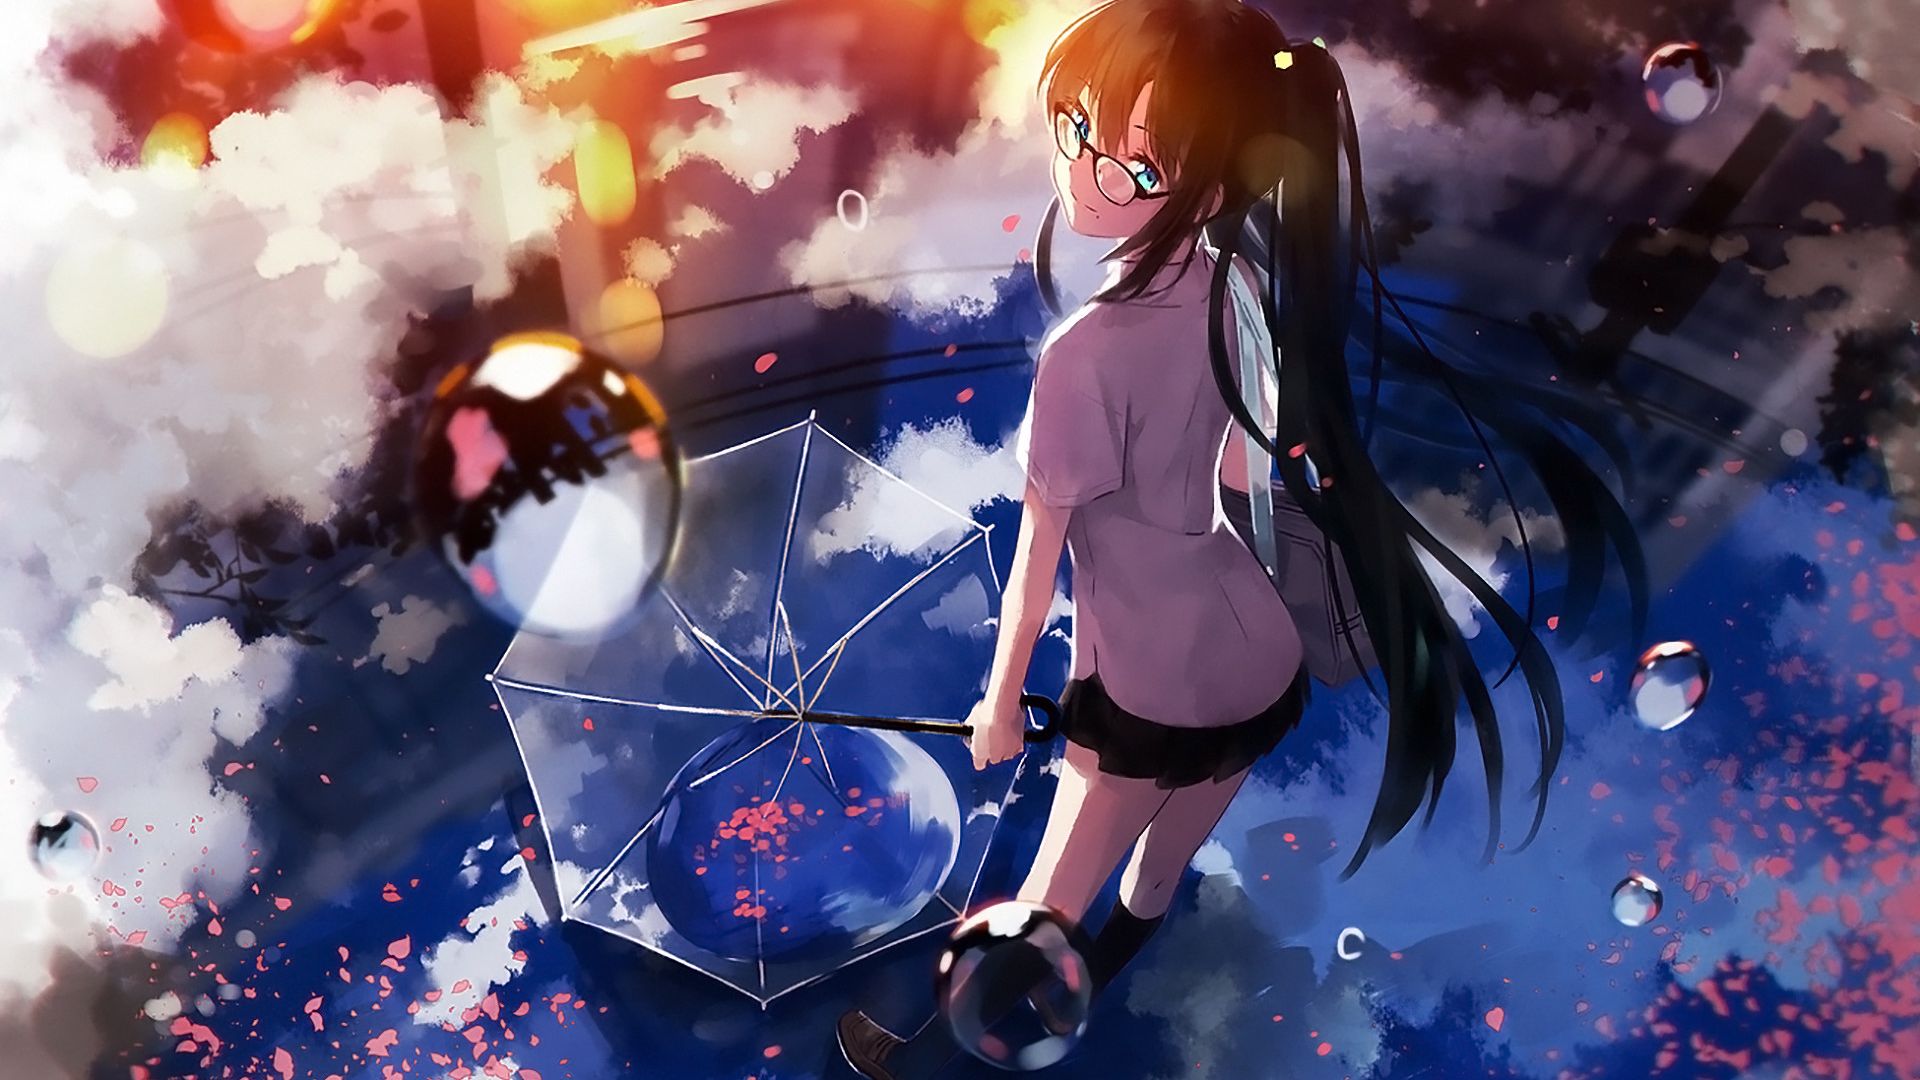 Wallpaper Umbrella, anime girl, original, fun